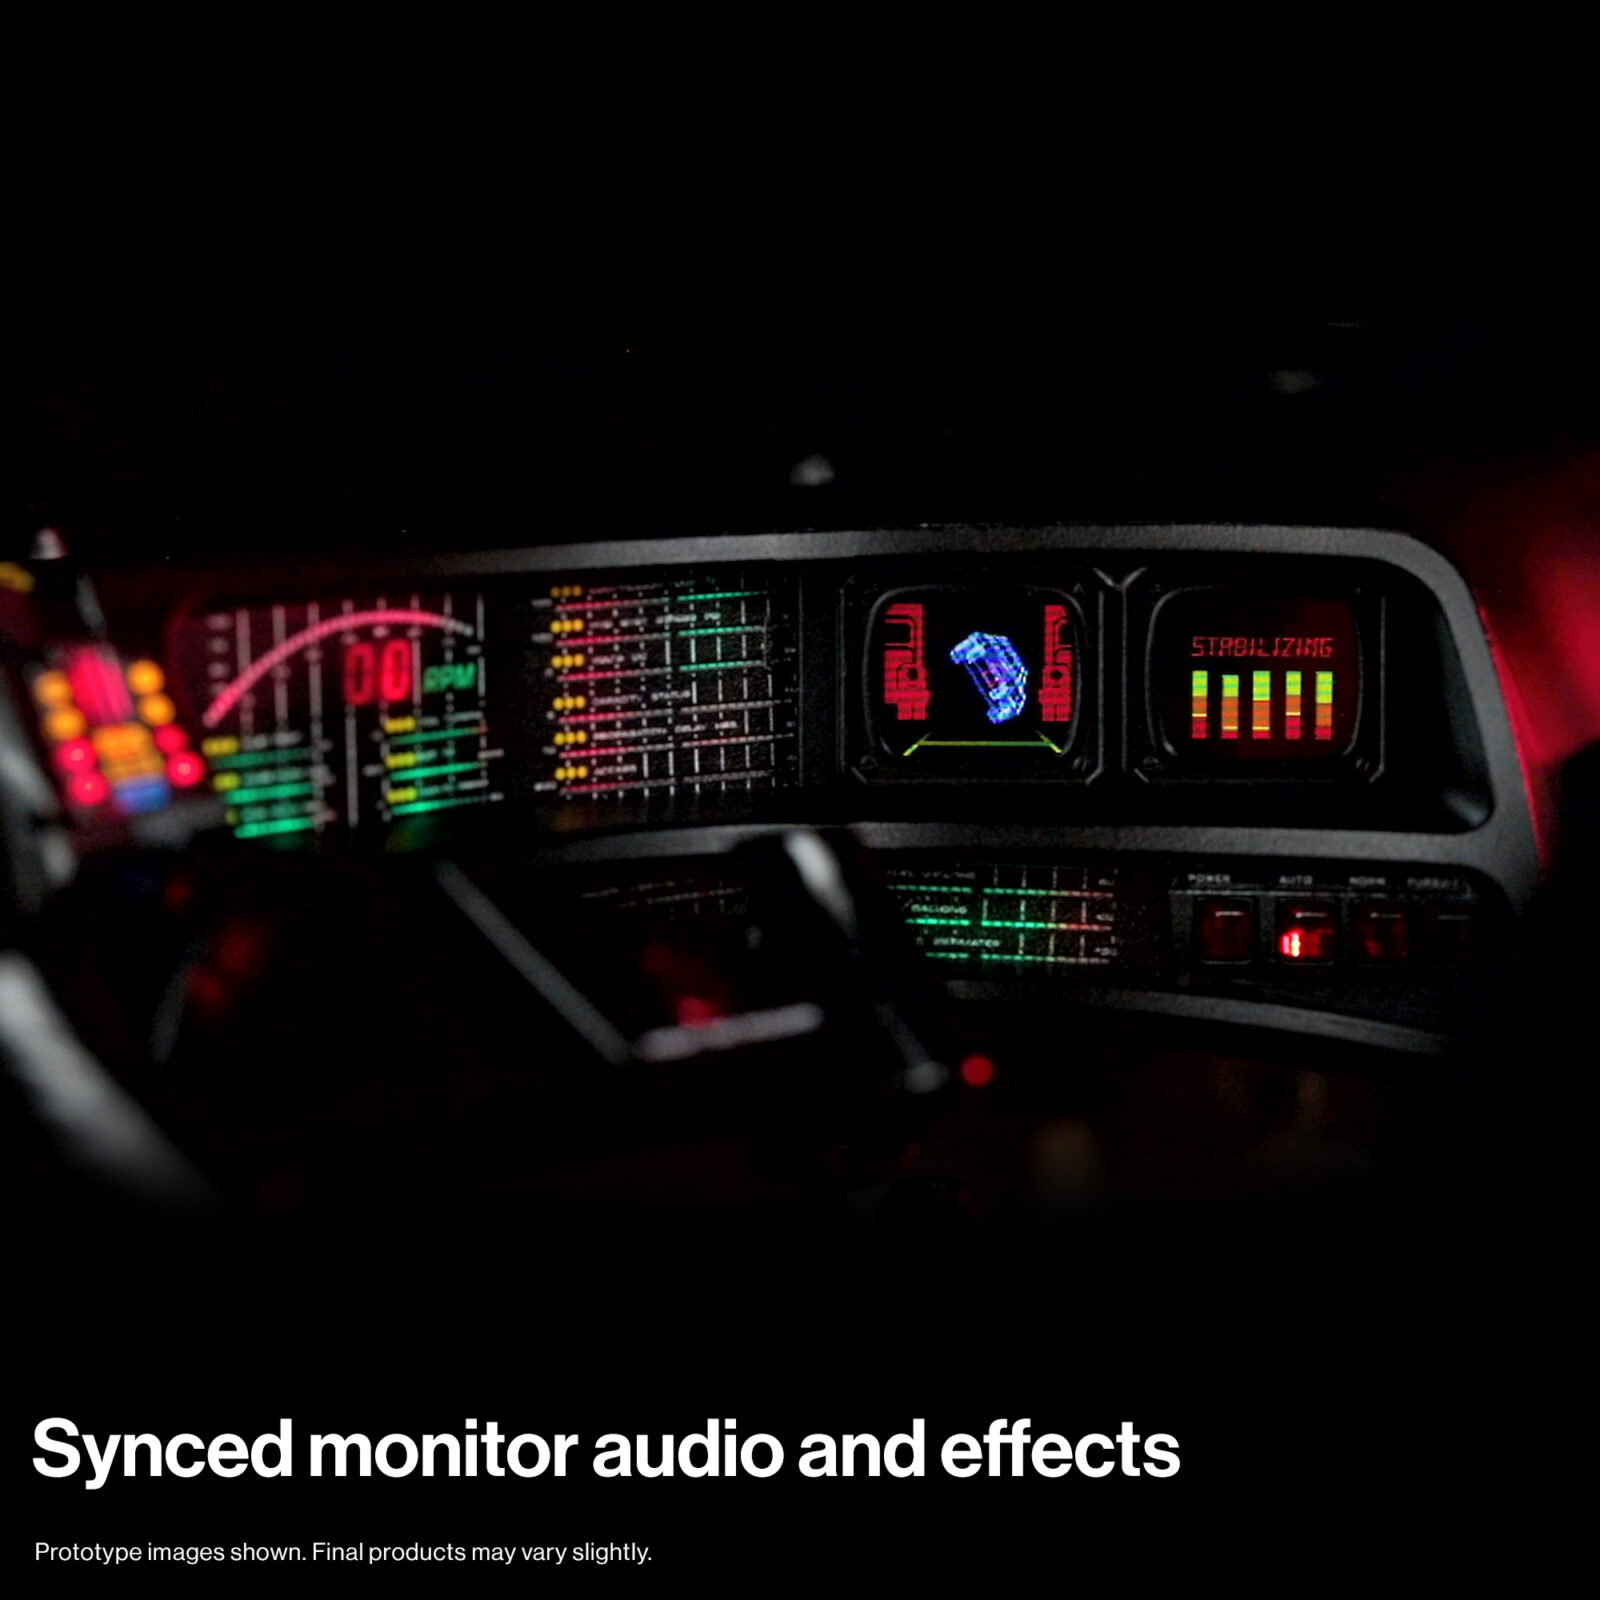 Synchronisierter Monitorton und Effekte auf dem KITT-Dashboard